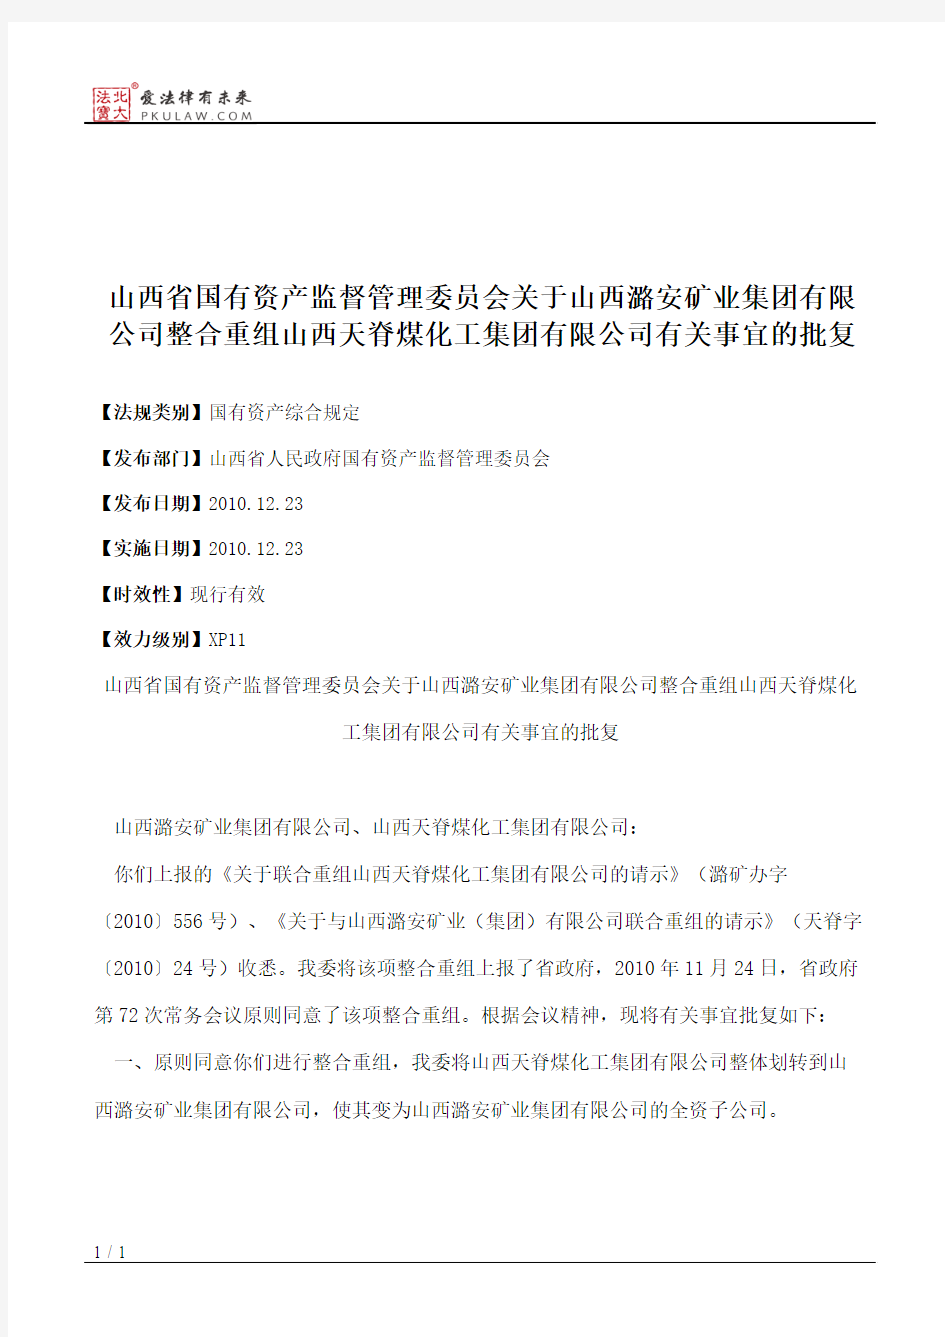 山西省国有资产监督管理委员会关于山西潞安矿业集团有限公司整合